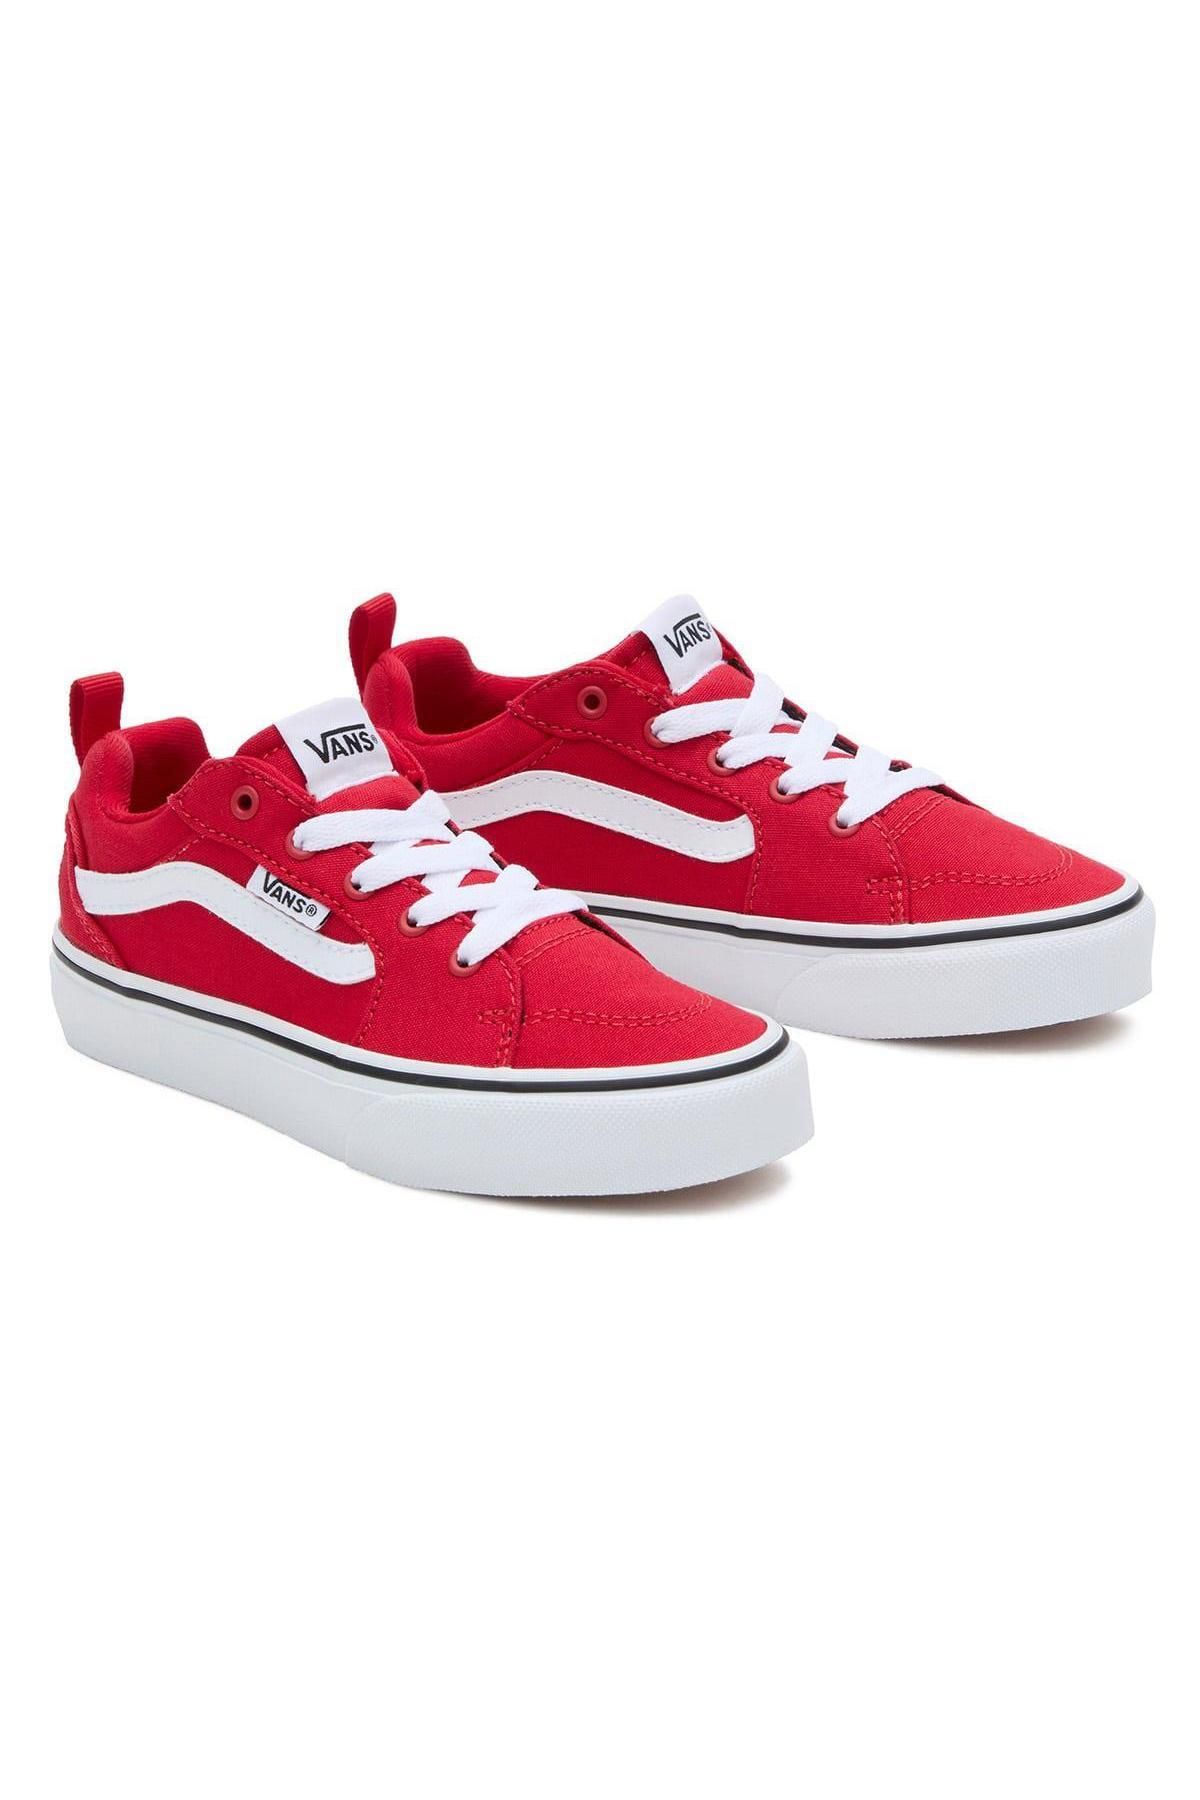 Vans Vn0005W8 Filmore Sneakers Kırmızı Çocuk Spor Ayakkabı